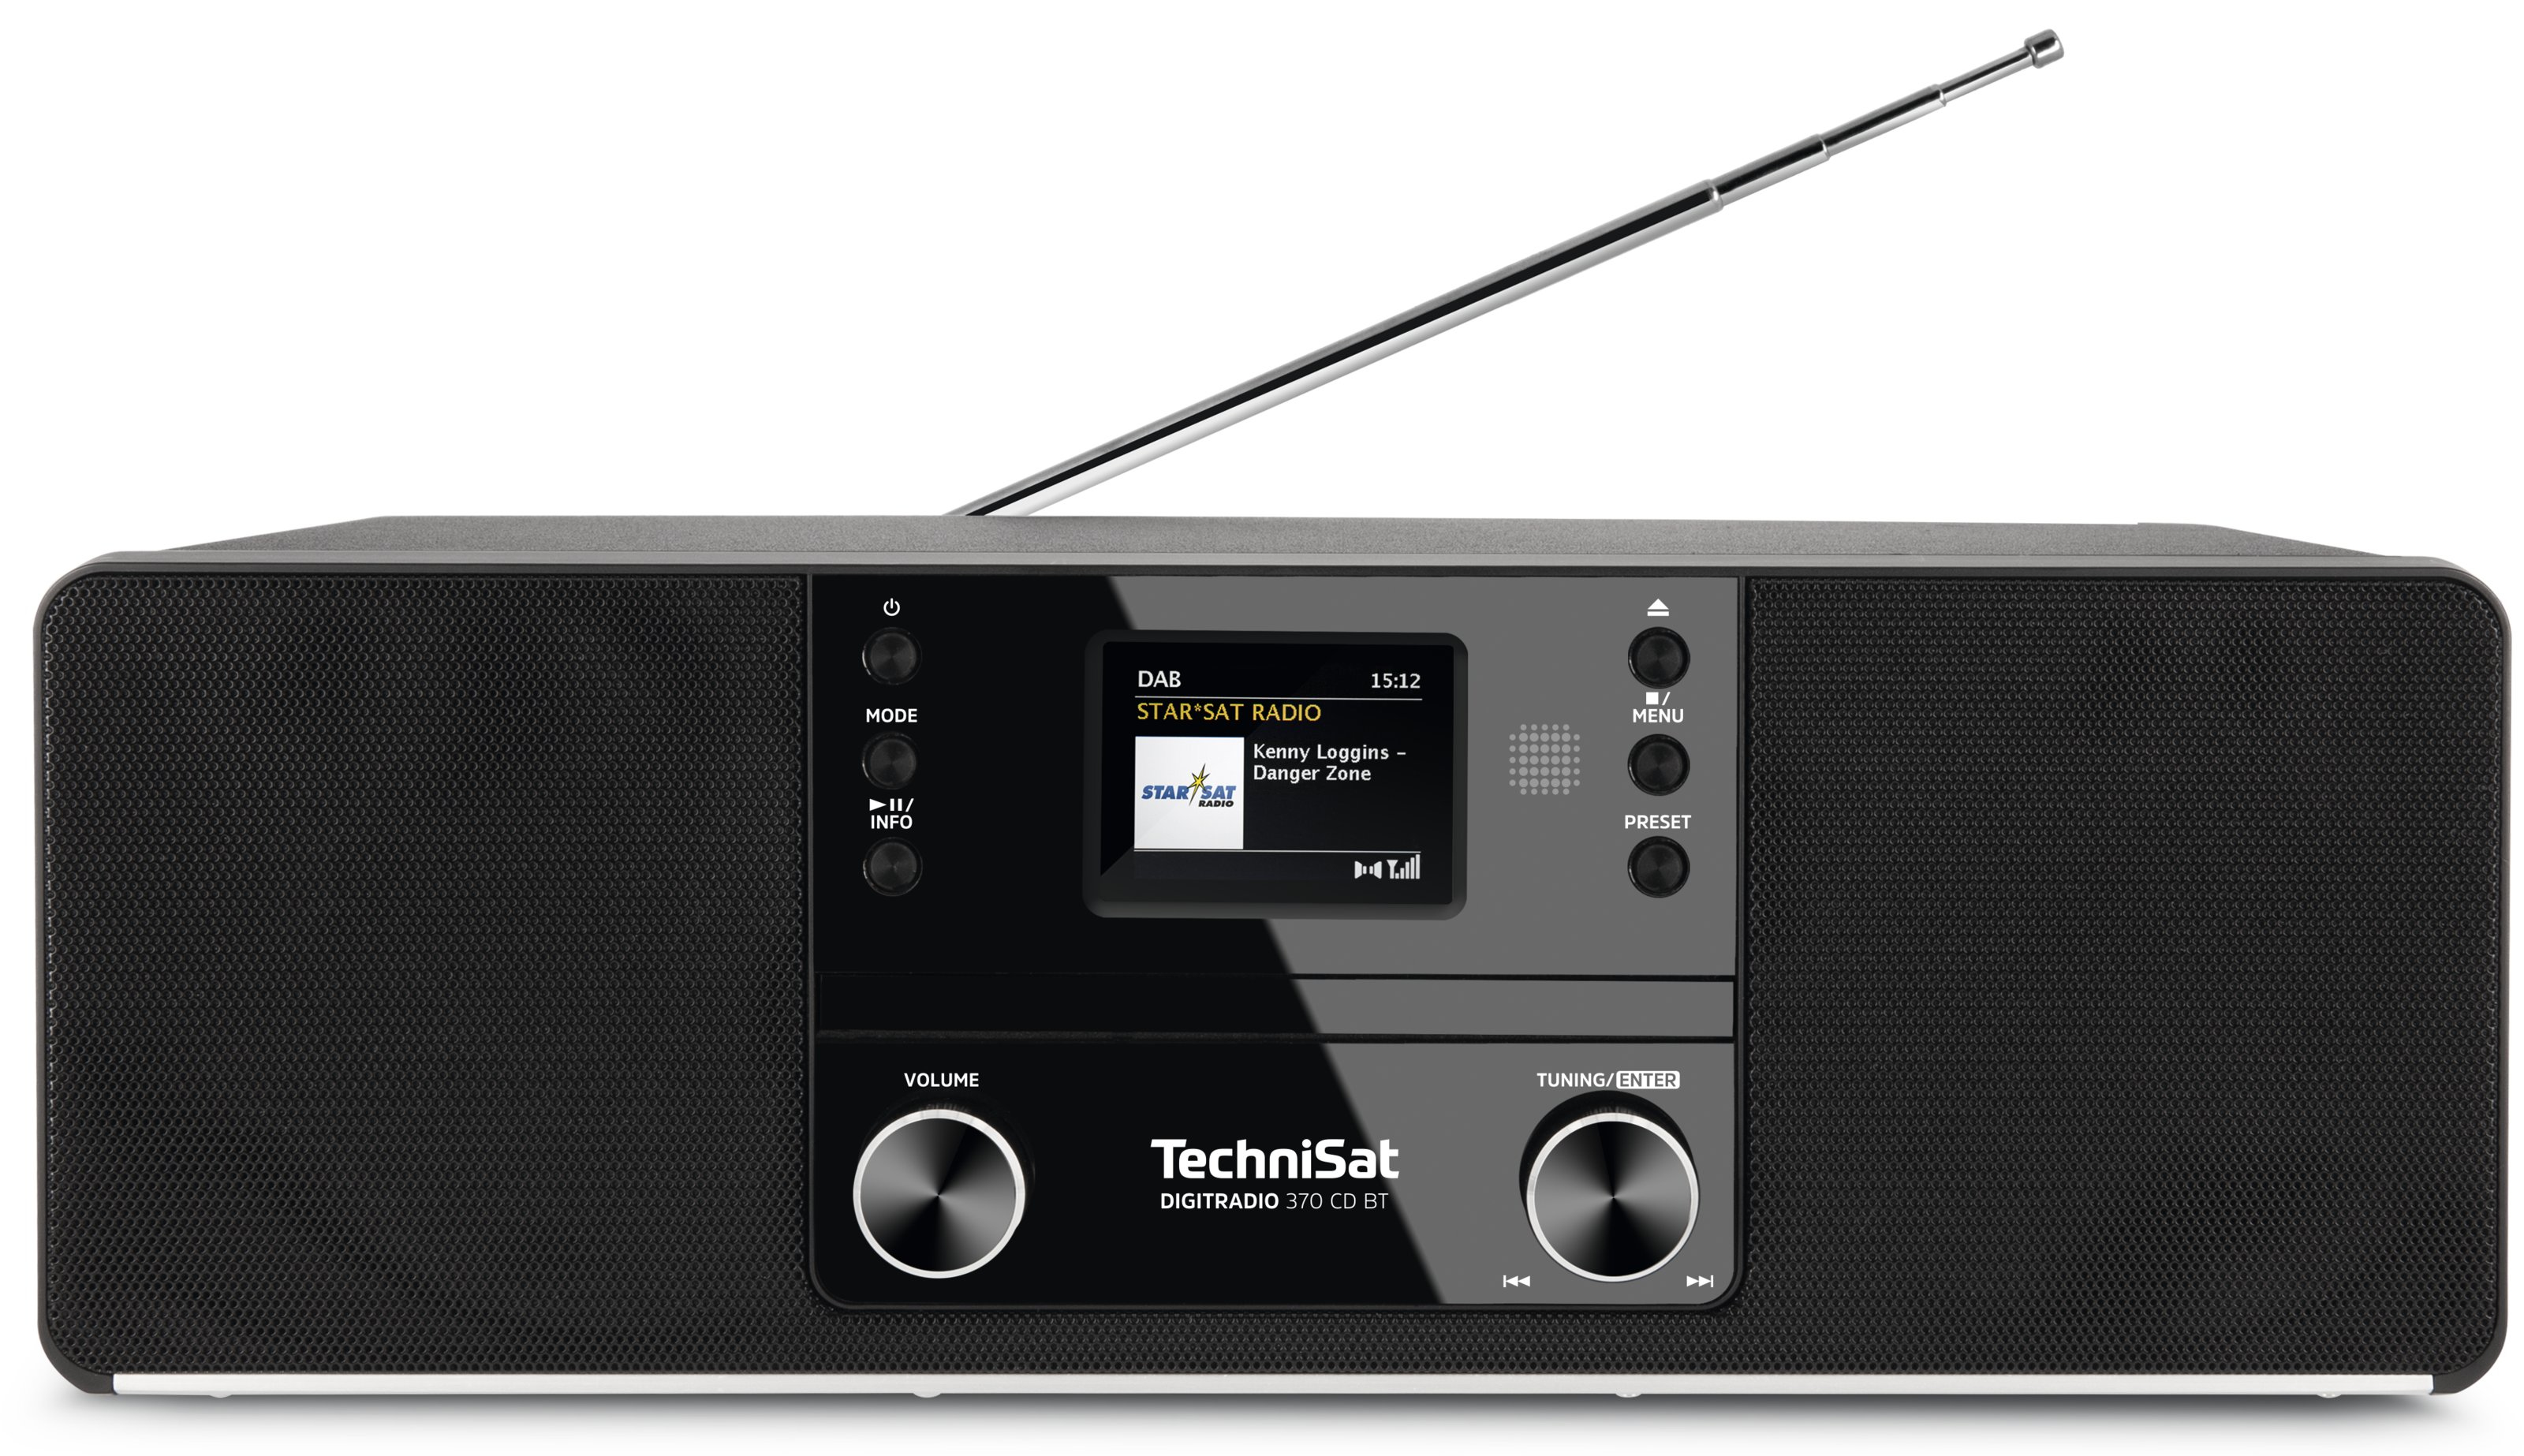 TechniSat DigitRadio CD BT 370